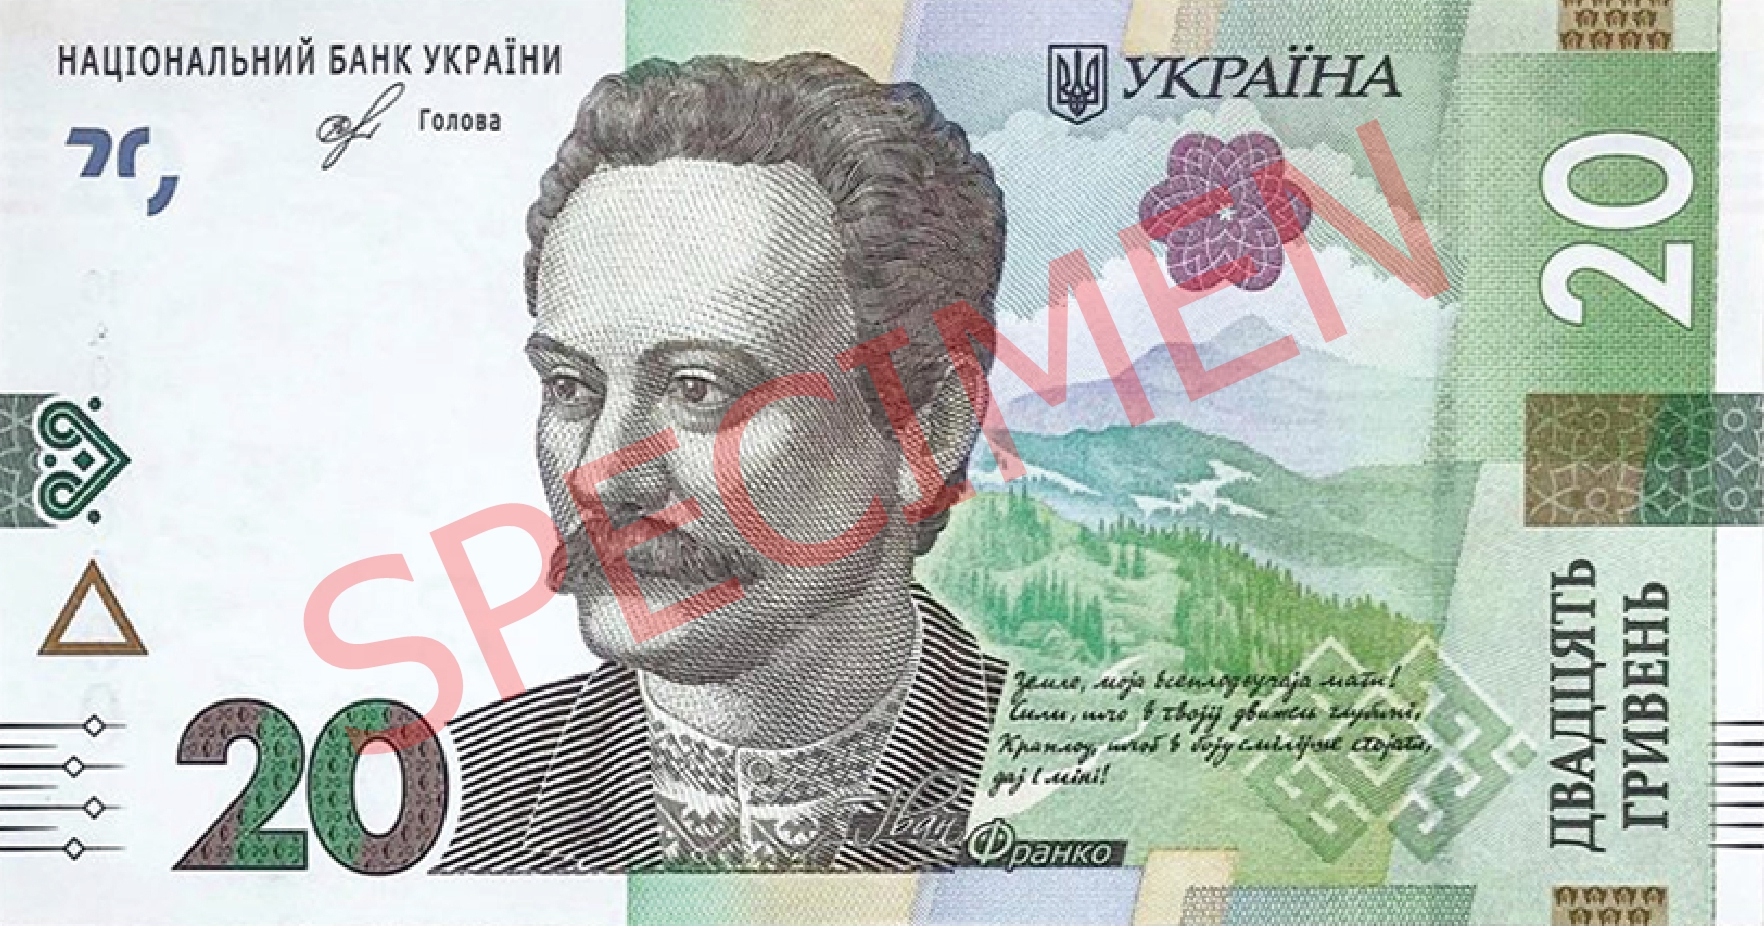 Ukraina wydała nowy banknot obiegowy o nominale 20 hrywien